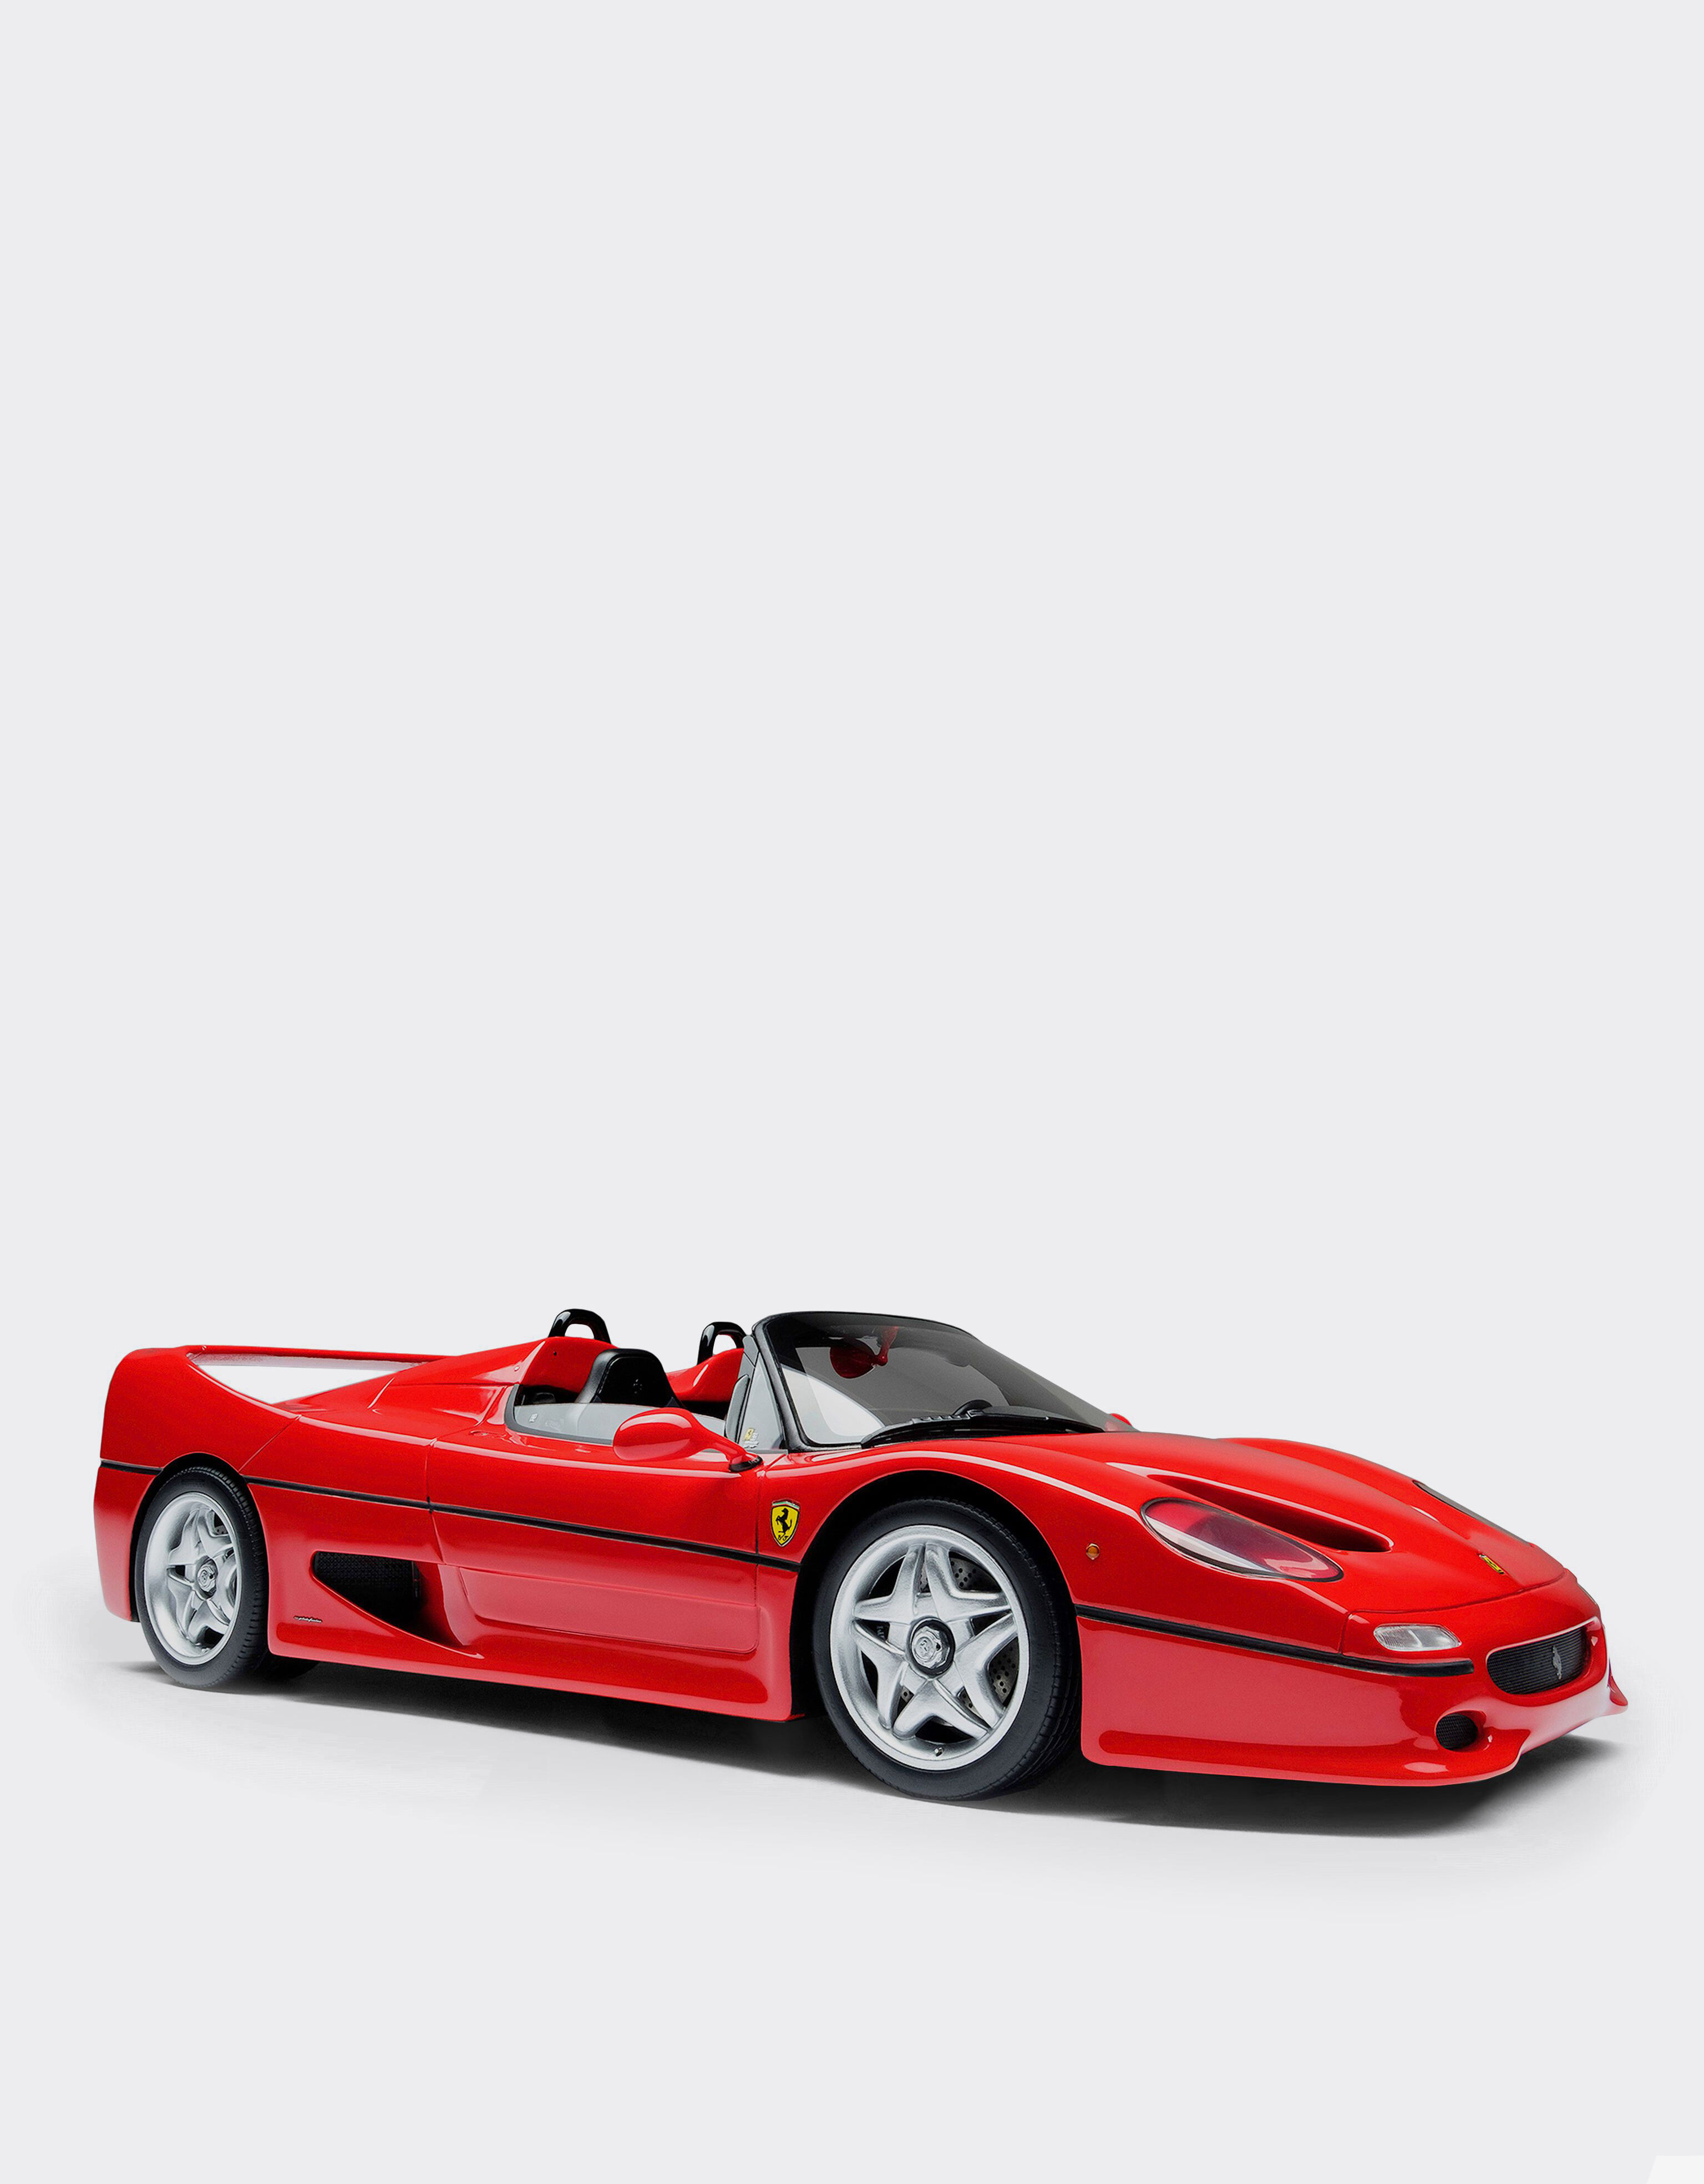 Ferrari Ferrari F50 モデルカー 1:18スケール レッド L7582f